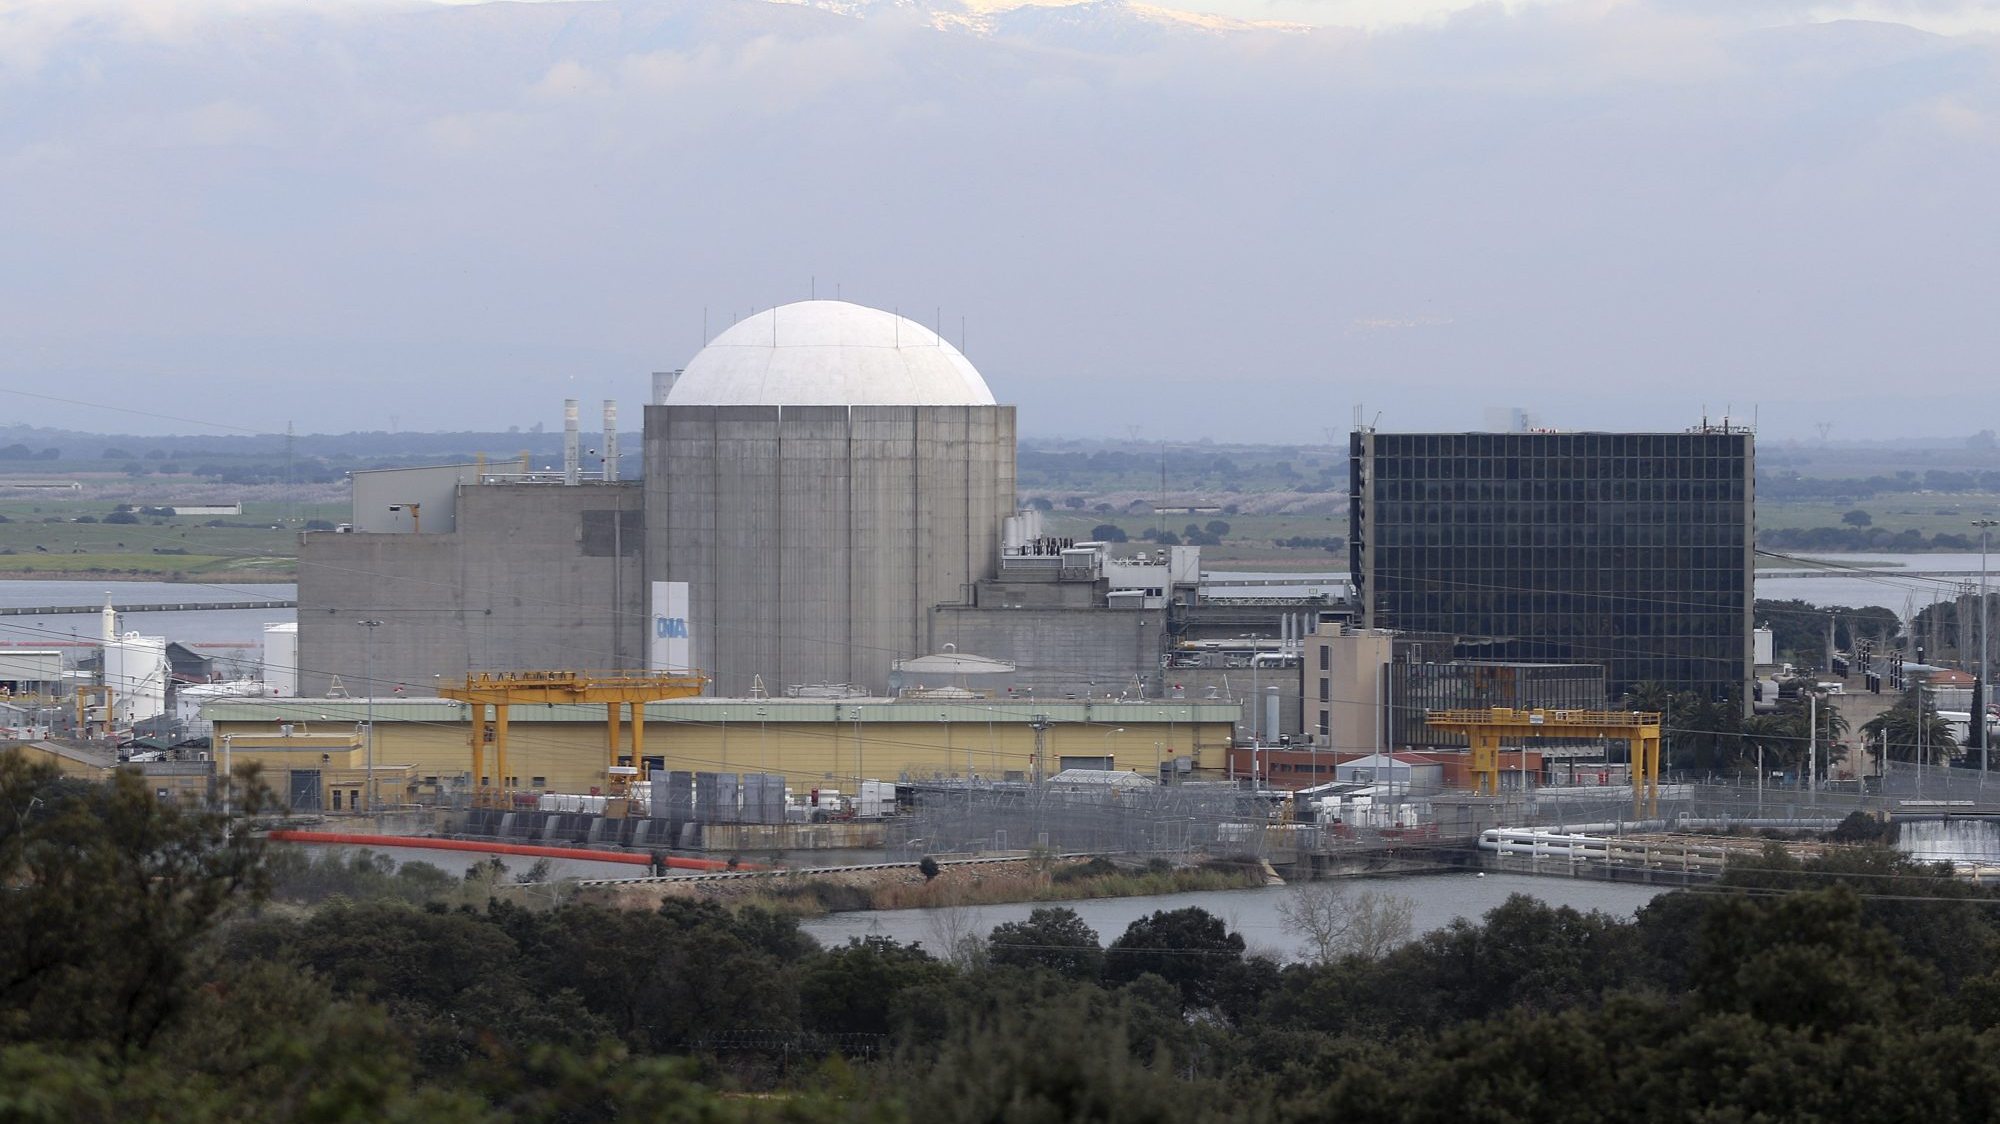 No final de julho, o PAN apresentou queixa contra o estado espanhol à UNECE pela decisão de prolongar o funcionamento da central nuclear de Almaraz